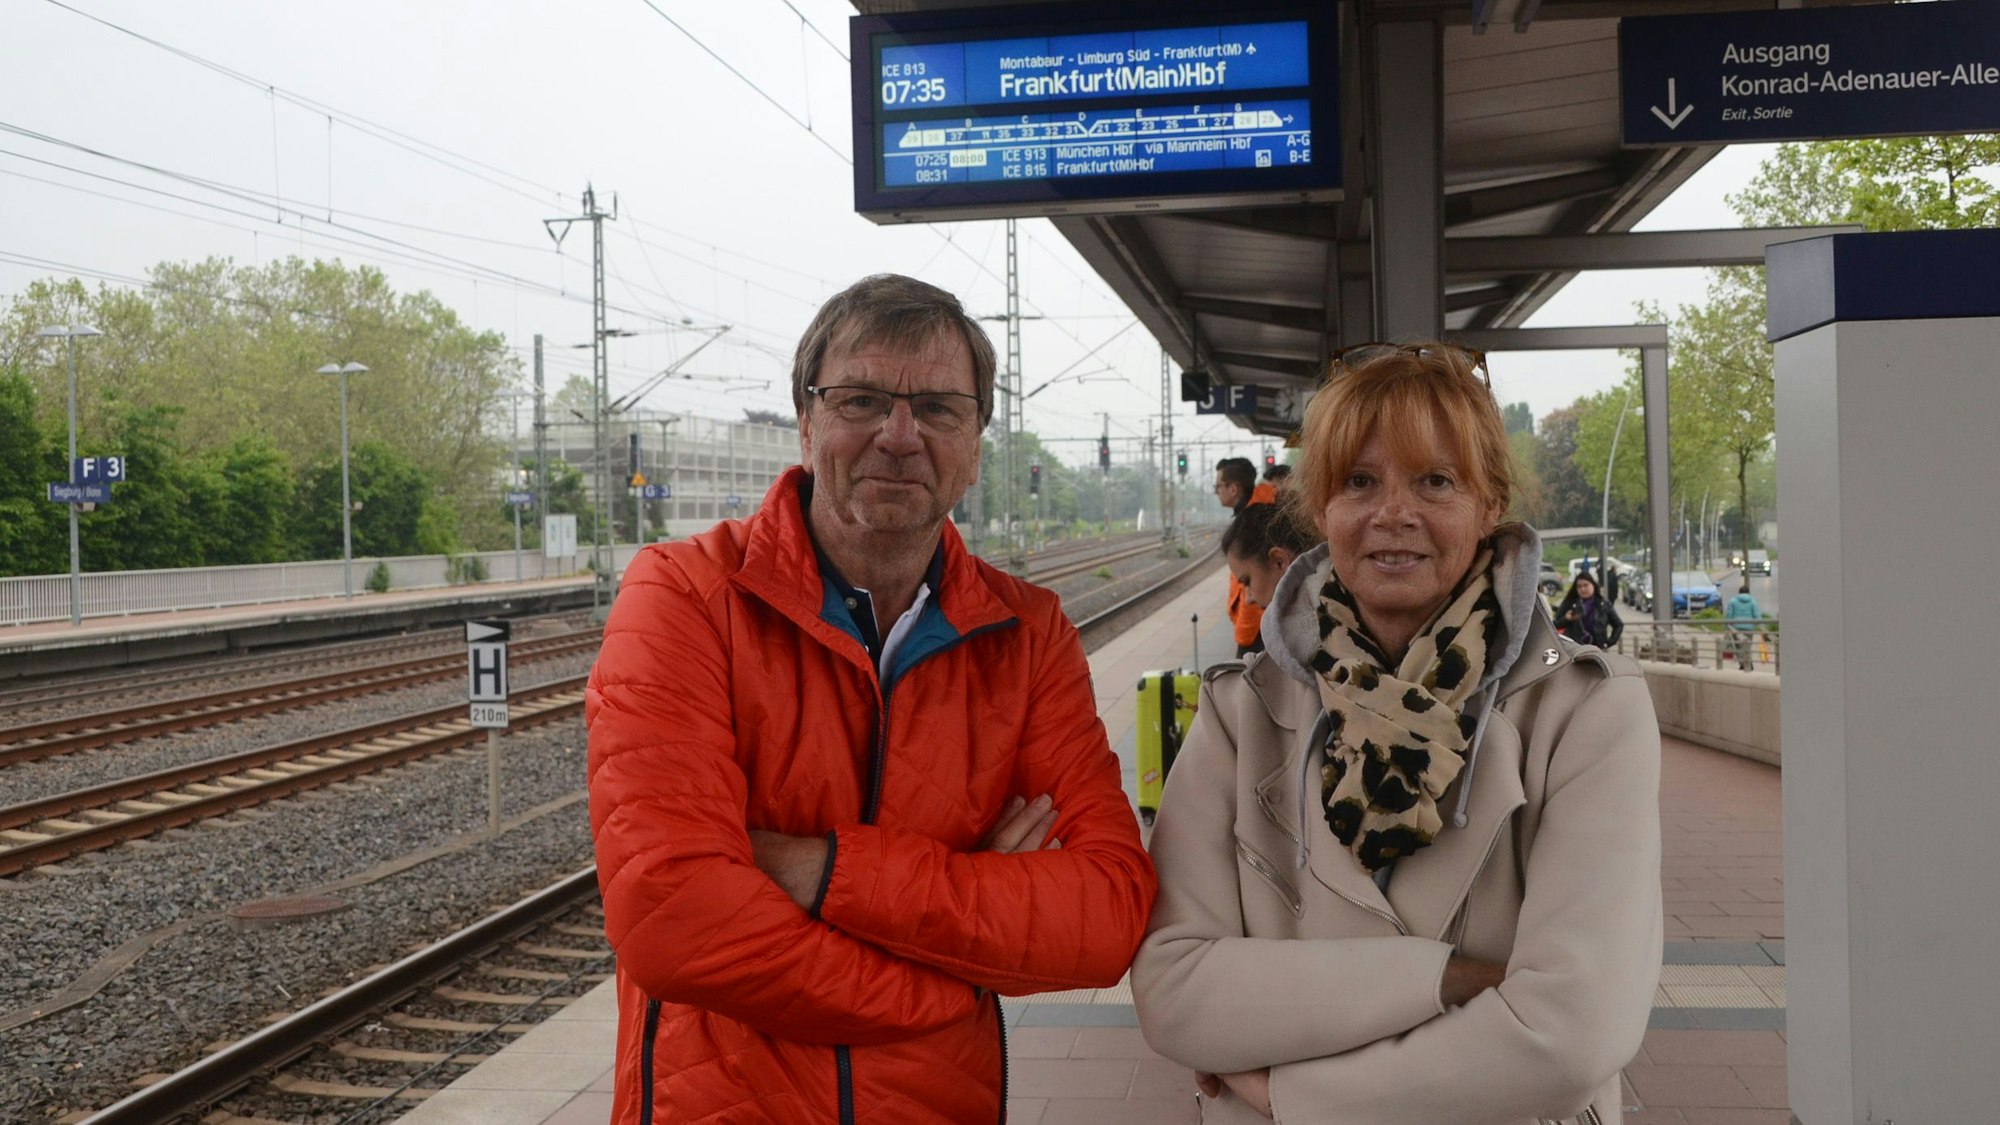 Ein Mann und eine Frau stehen auf dem Bahnsteig, neben ihnen liegen die Gleise, über ihnen hängt eine Anzeigetafel, die einen Zug nach Frankfurt ankündigt.